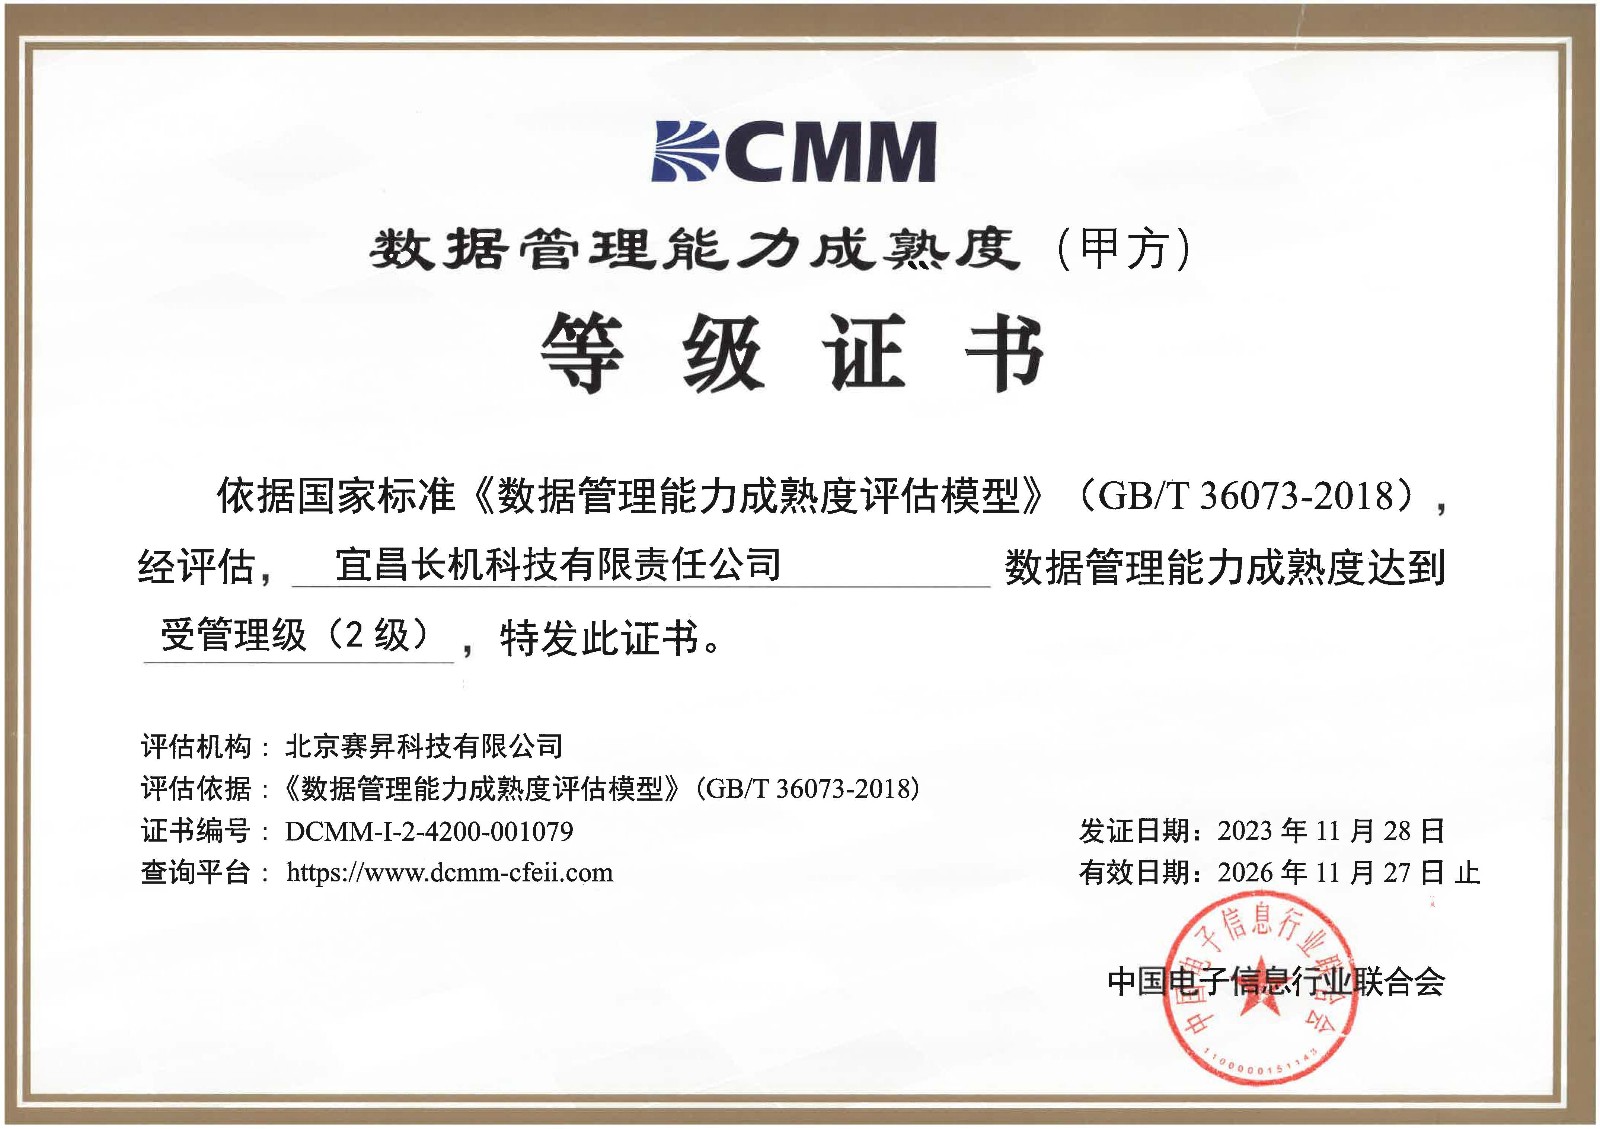 我公司通过DCMM数据管理能力贯标等级认证